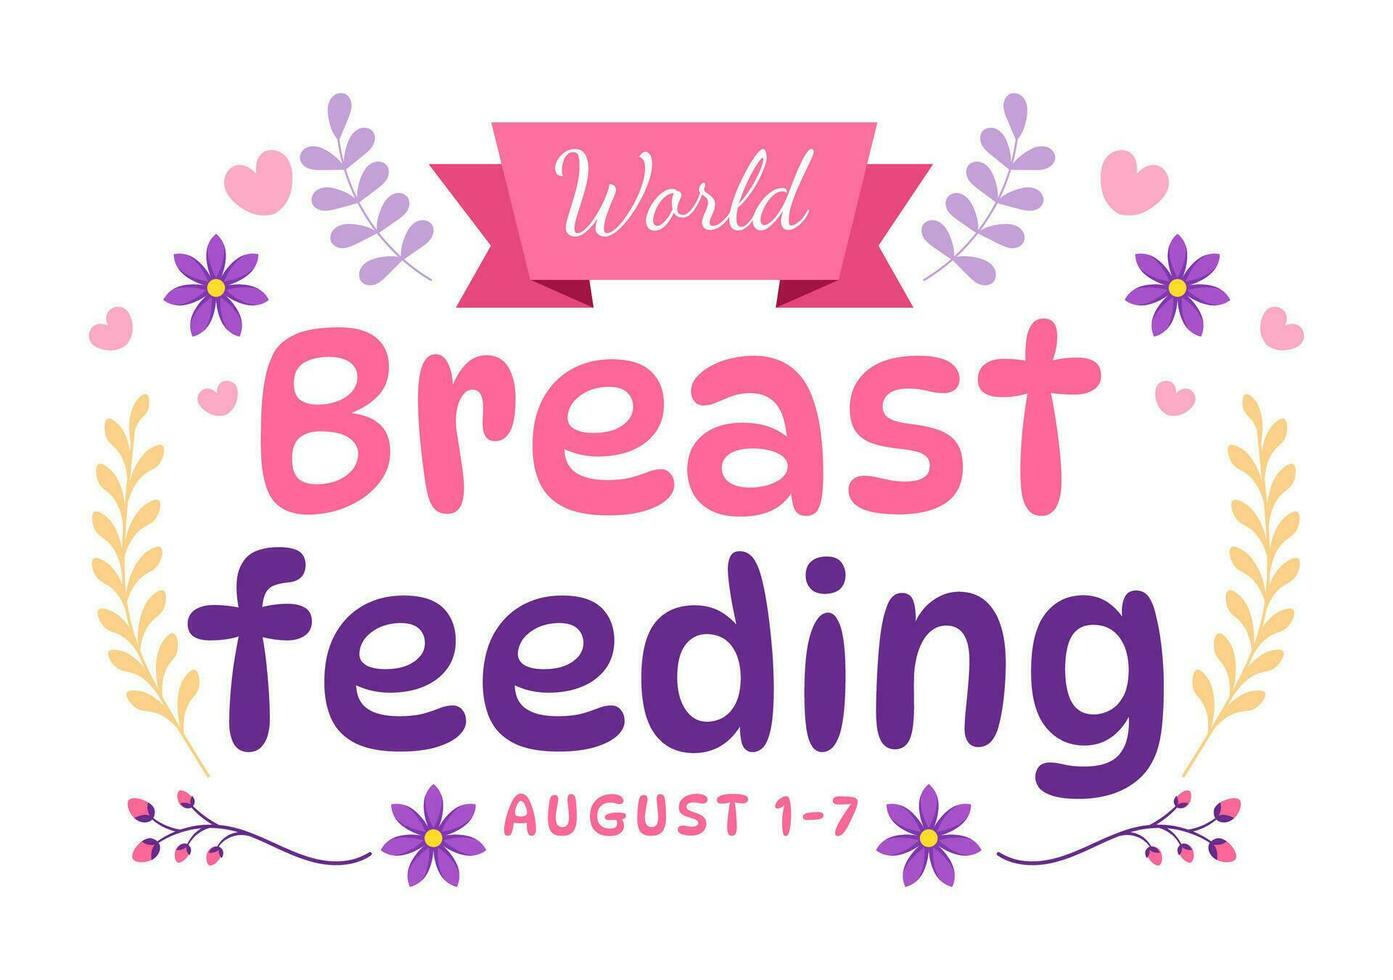 Welt Stillen Woche Vektor Illustration von Fütterung von Babys mit Milch von ein Frauen Brust im eben Karikatur Hand gezeichnet Vorlagen